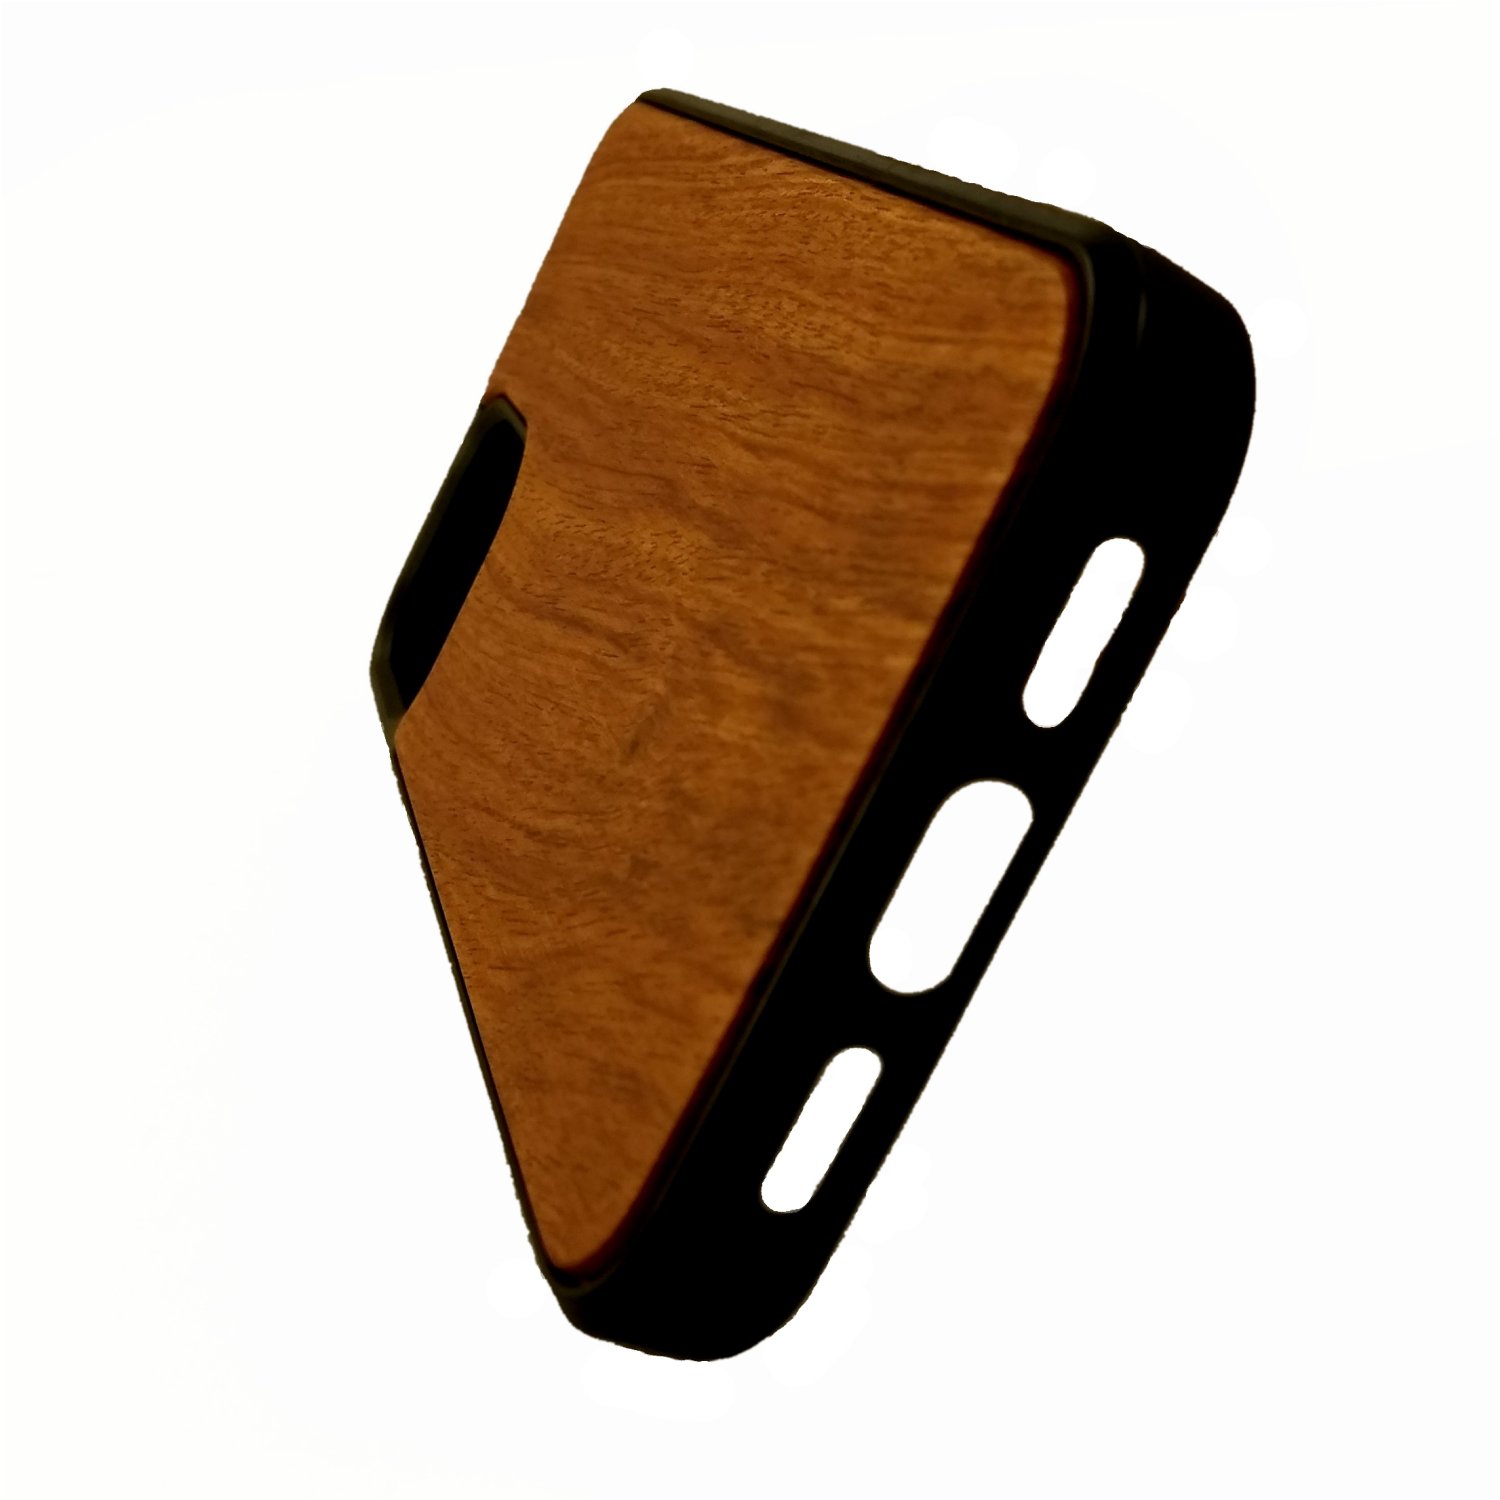 Schutzcover aus Holz und Kunststoff für Iphone 12 mini